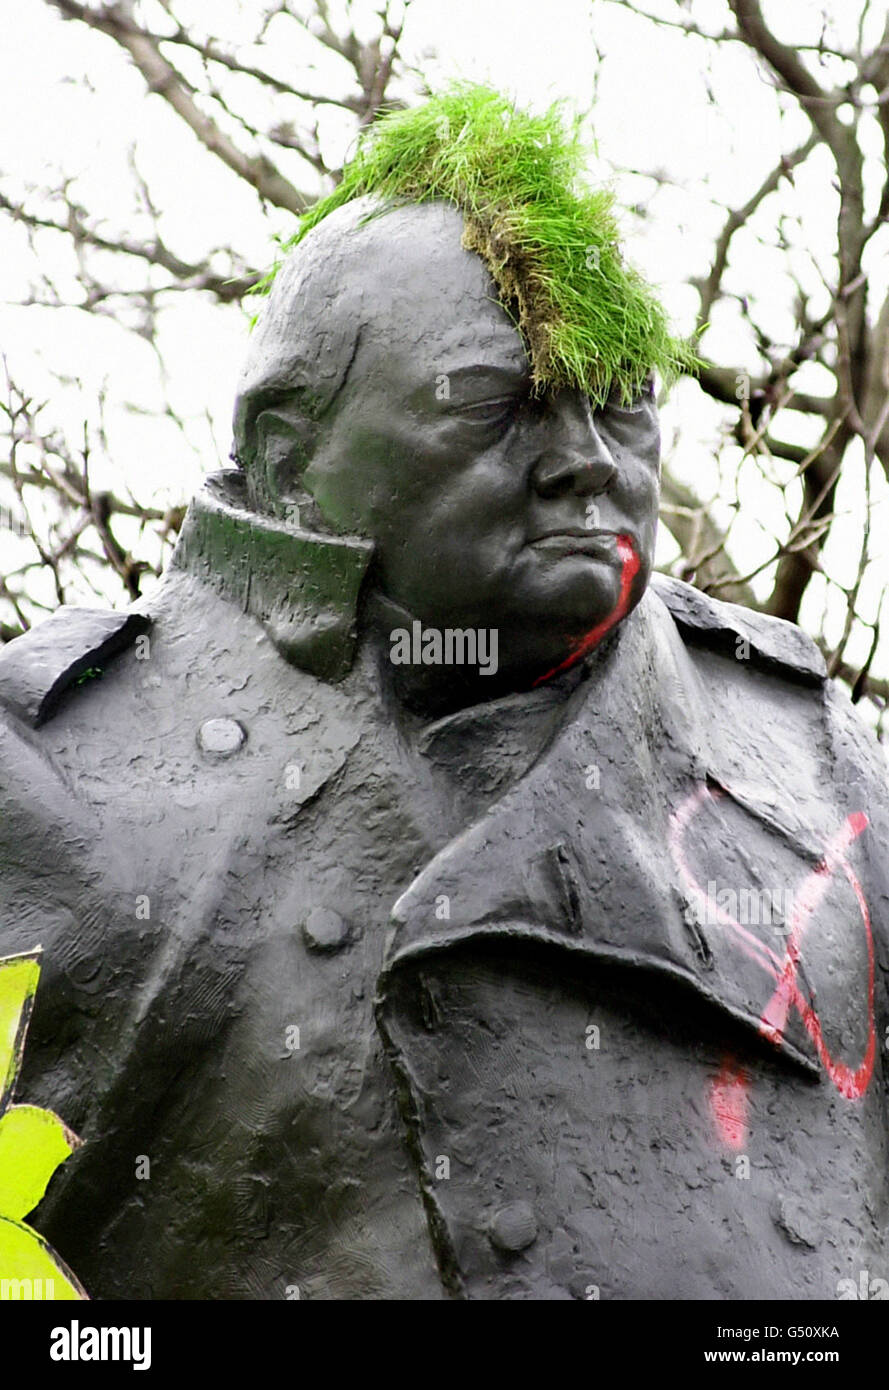 Die Statue von Winston Churchill, bedeckt mit Graffiti und einem mohican-Rasen, der während der antikapitalistischen Demo am Kopf des Denkmals befestigt wurde. Stockfoto